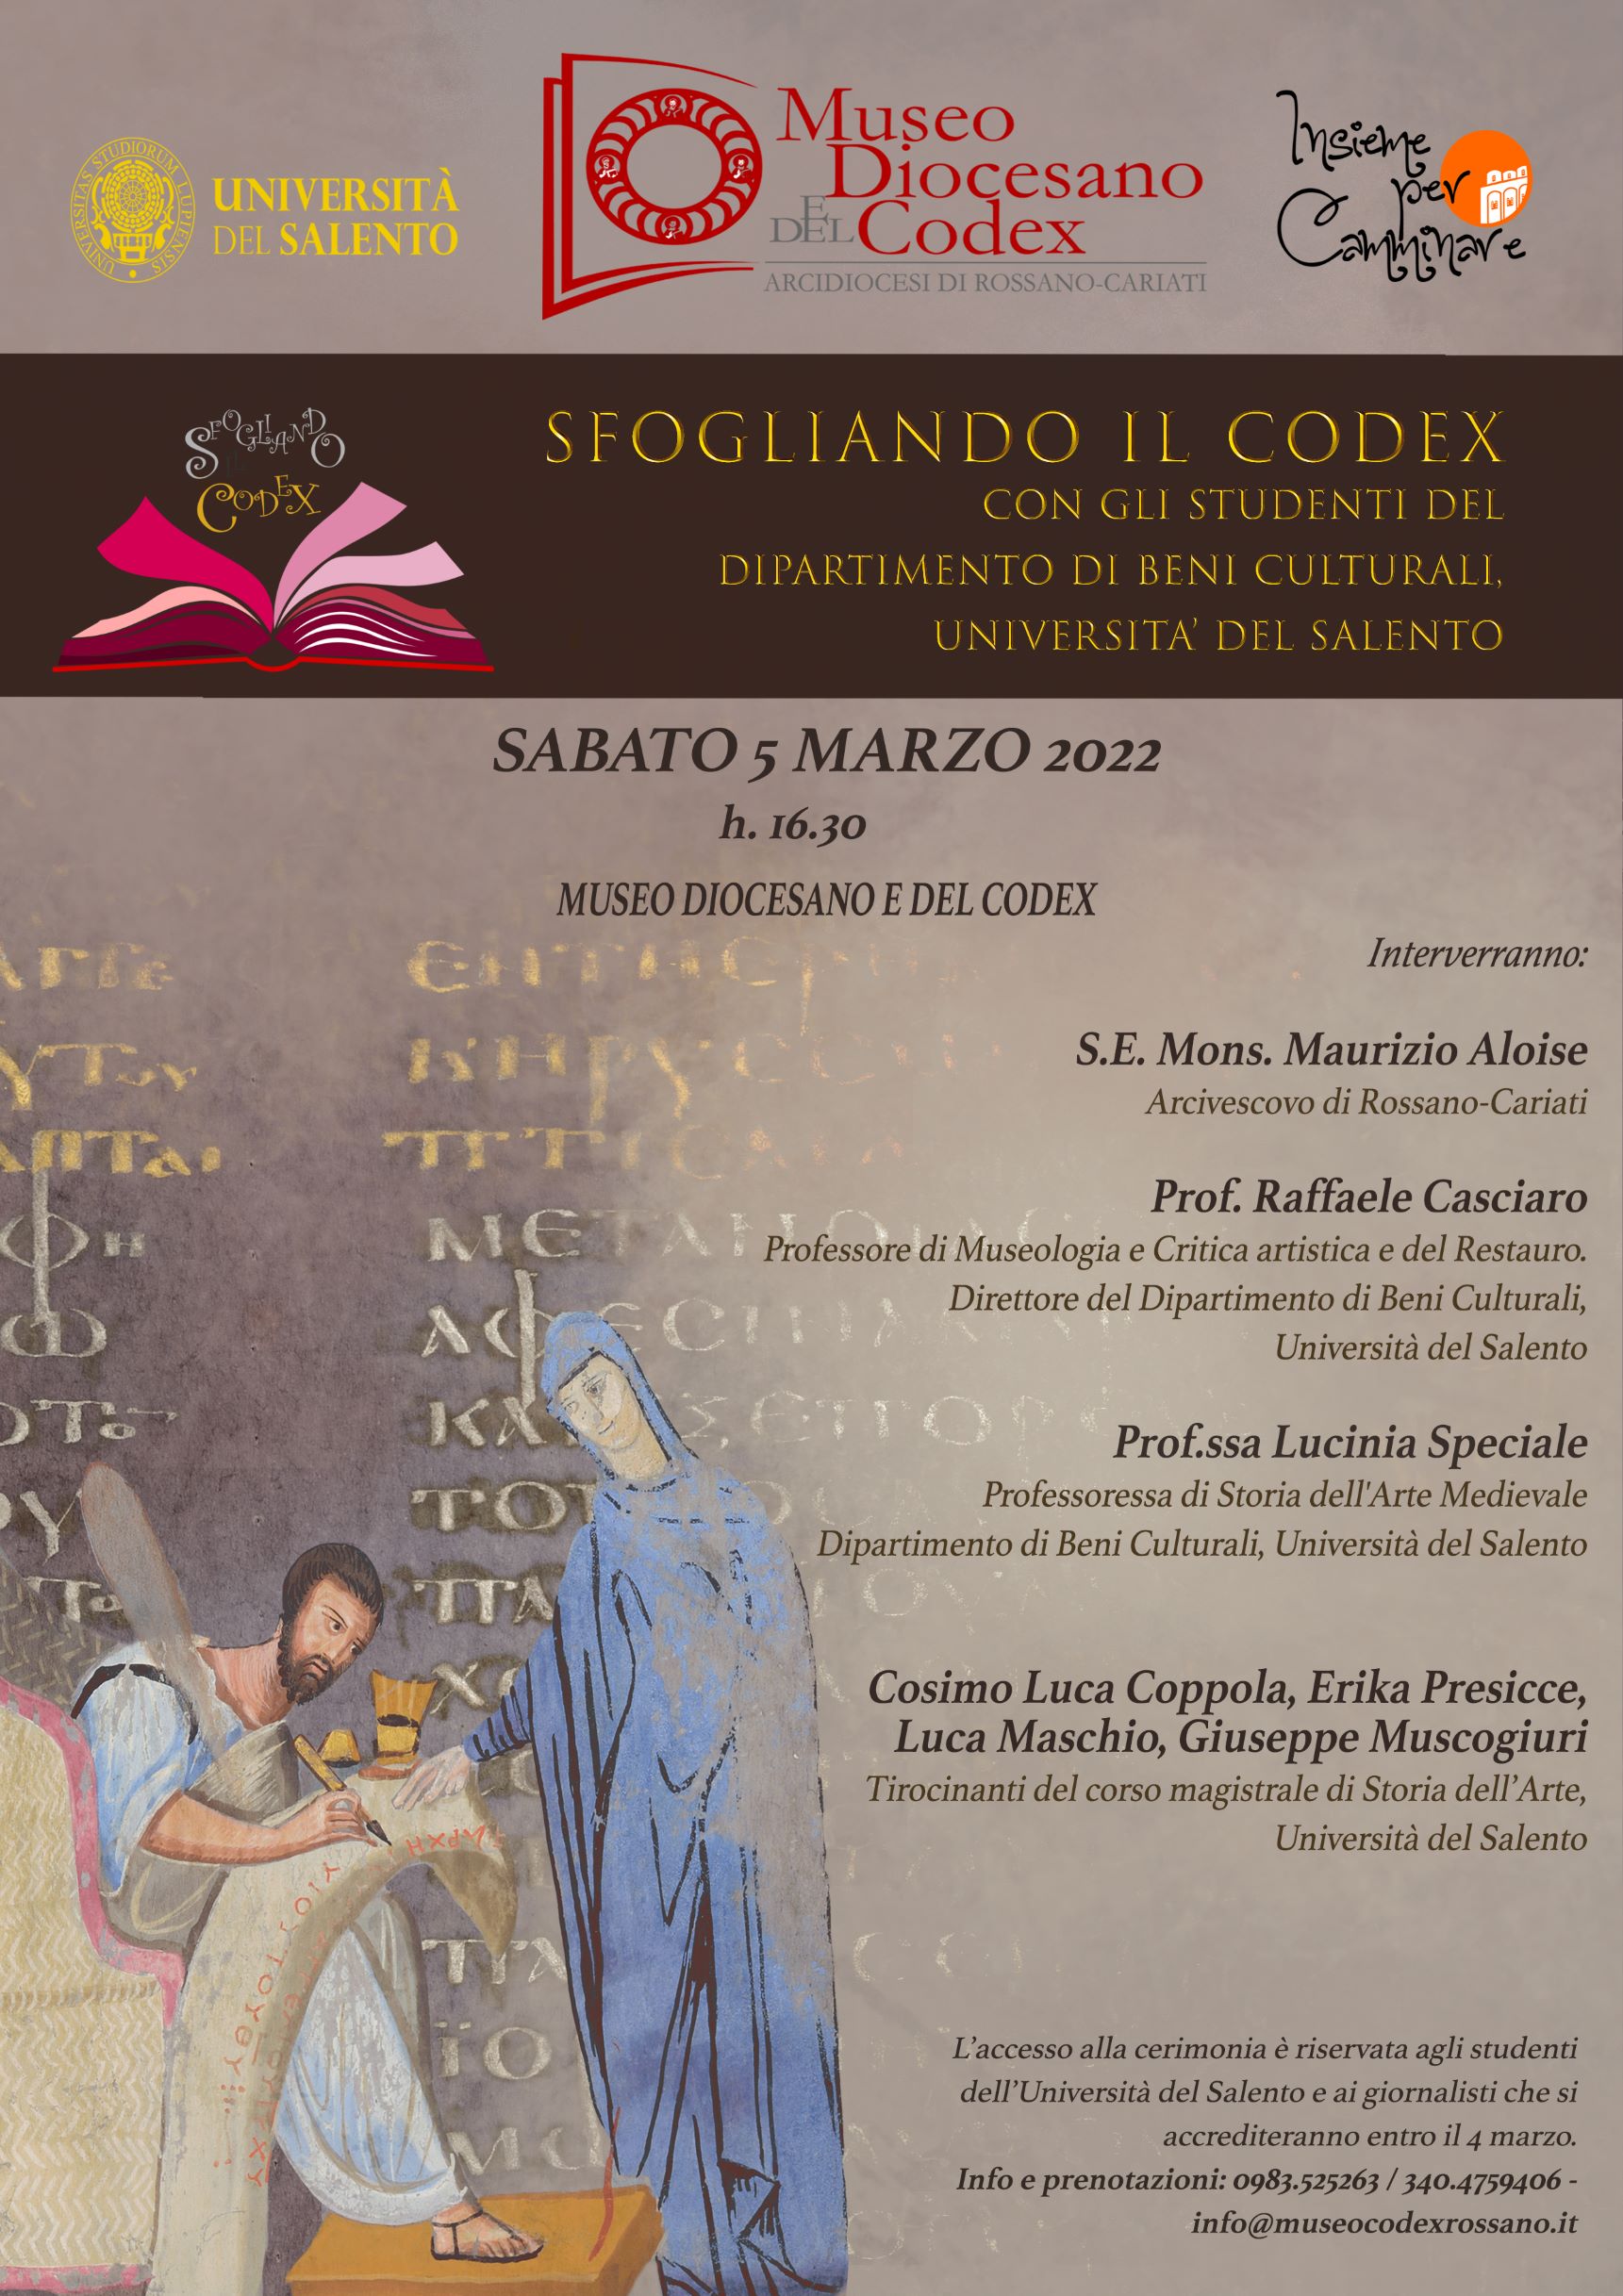 Sfogliando il Codex con gli studenti del Dipartimento di Beni Culturali dell'Università del Salento.